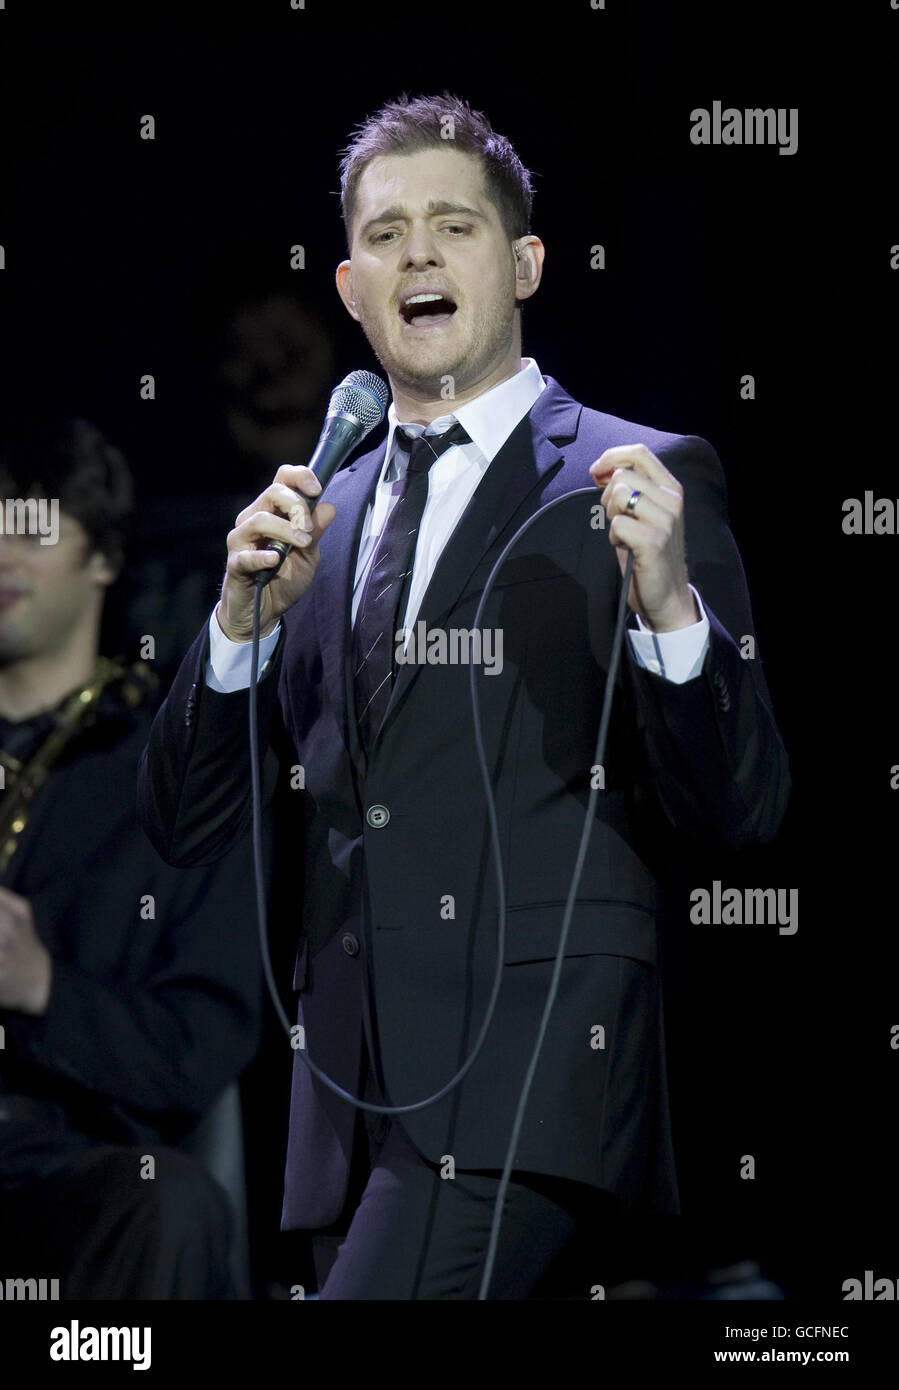 Michael Buble in concerto - Londra. Michael Buble si esibisce sul palco alla 02 Arena di Londra. Foto Stock